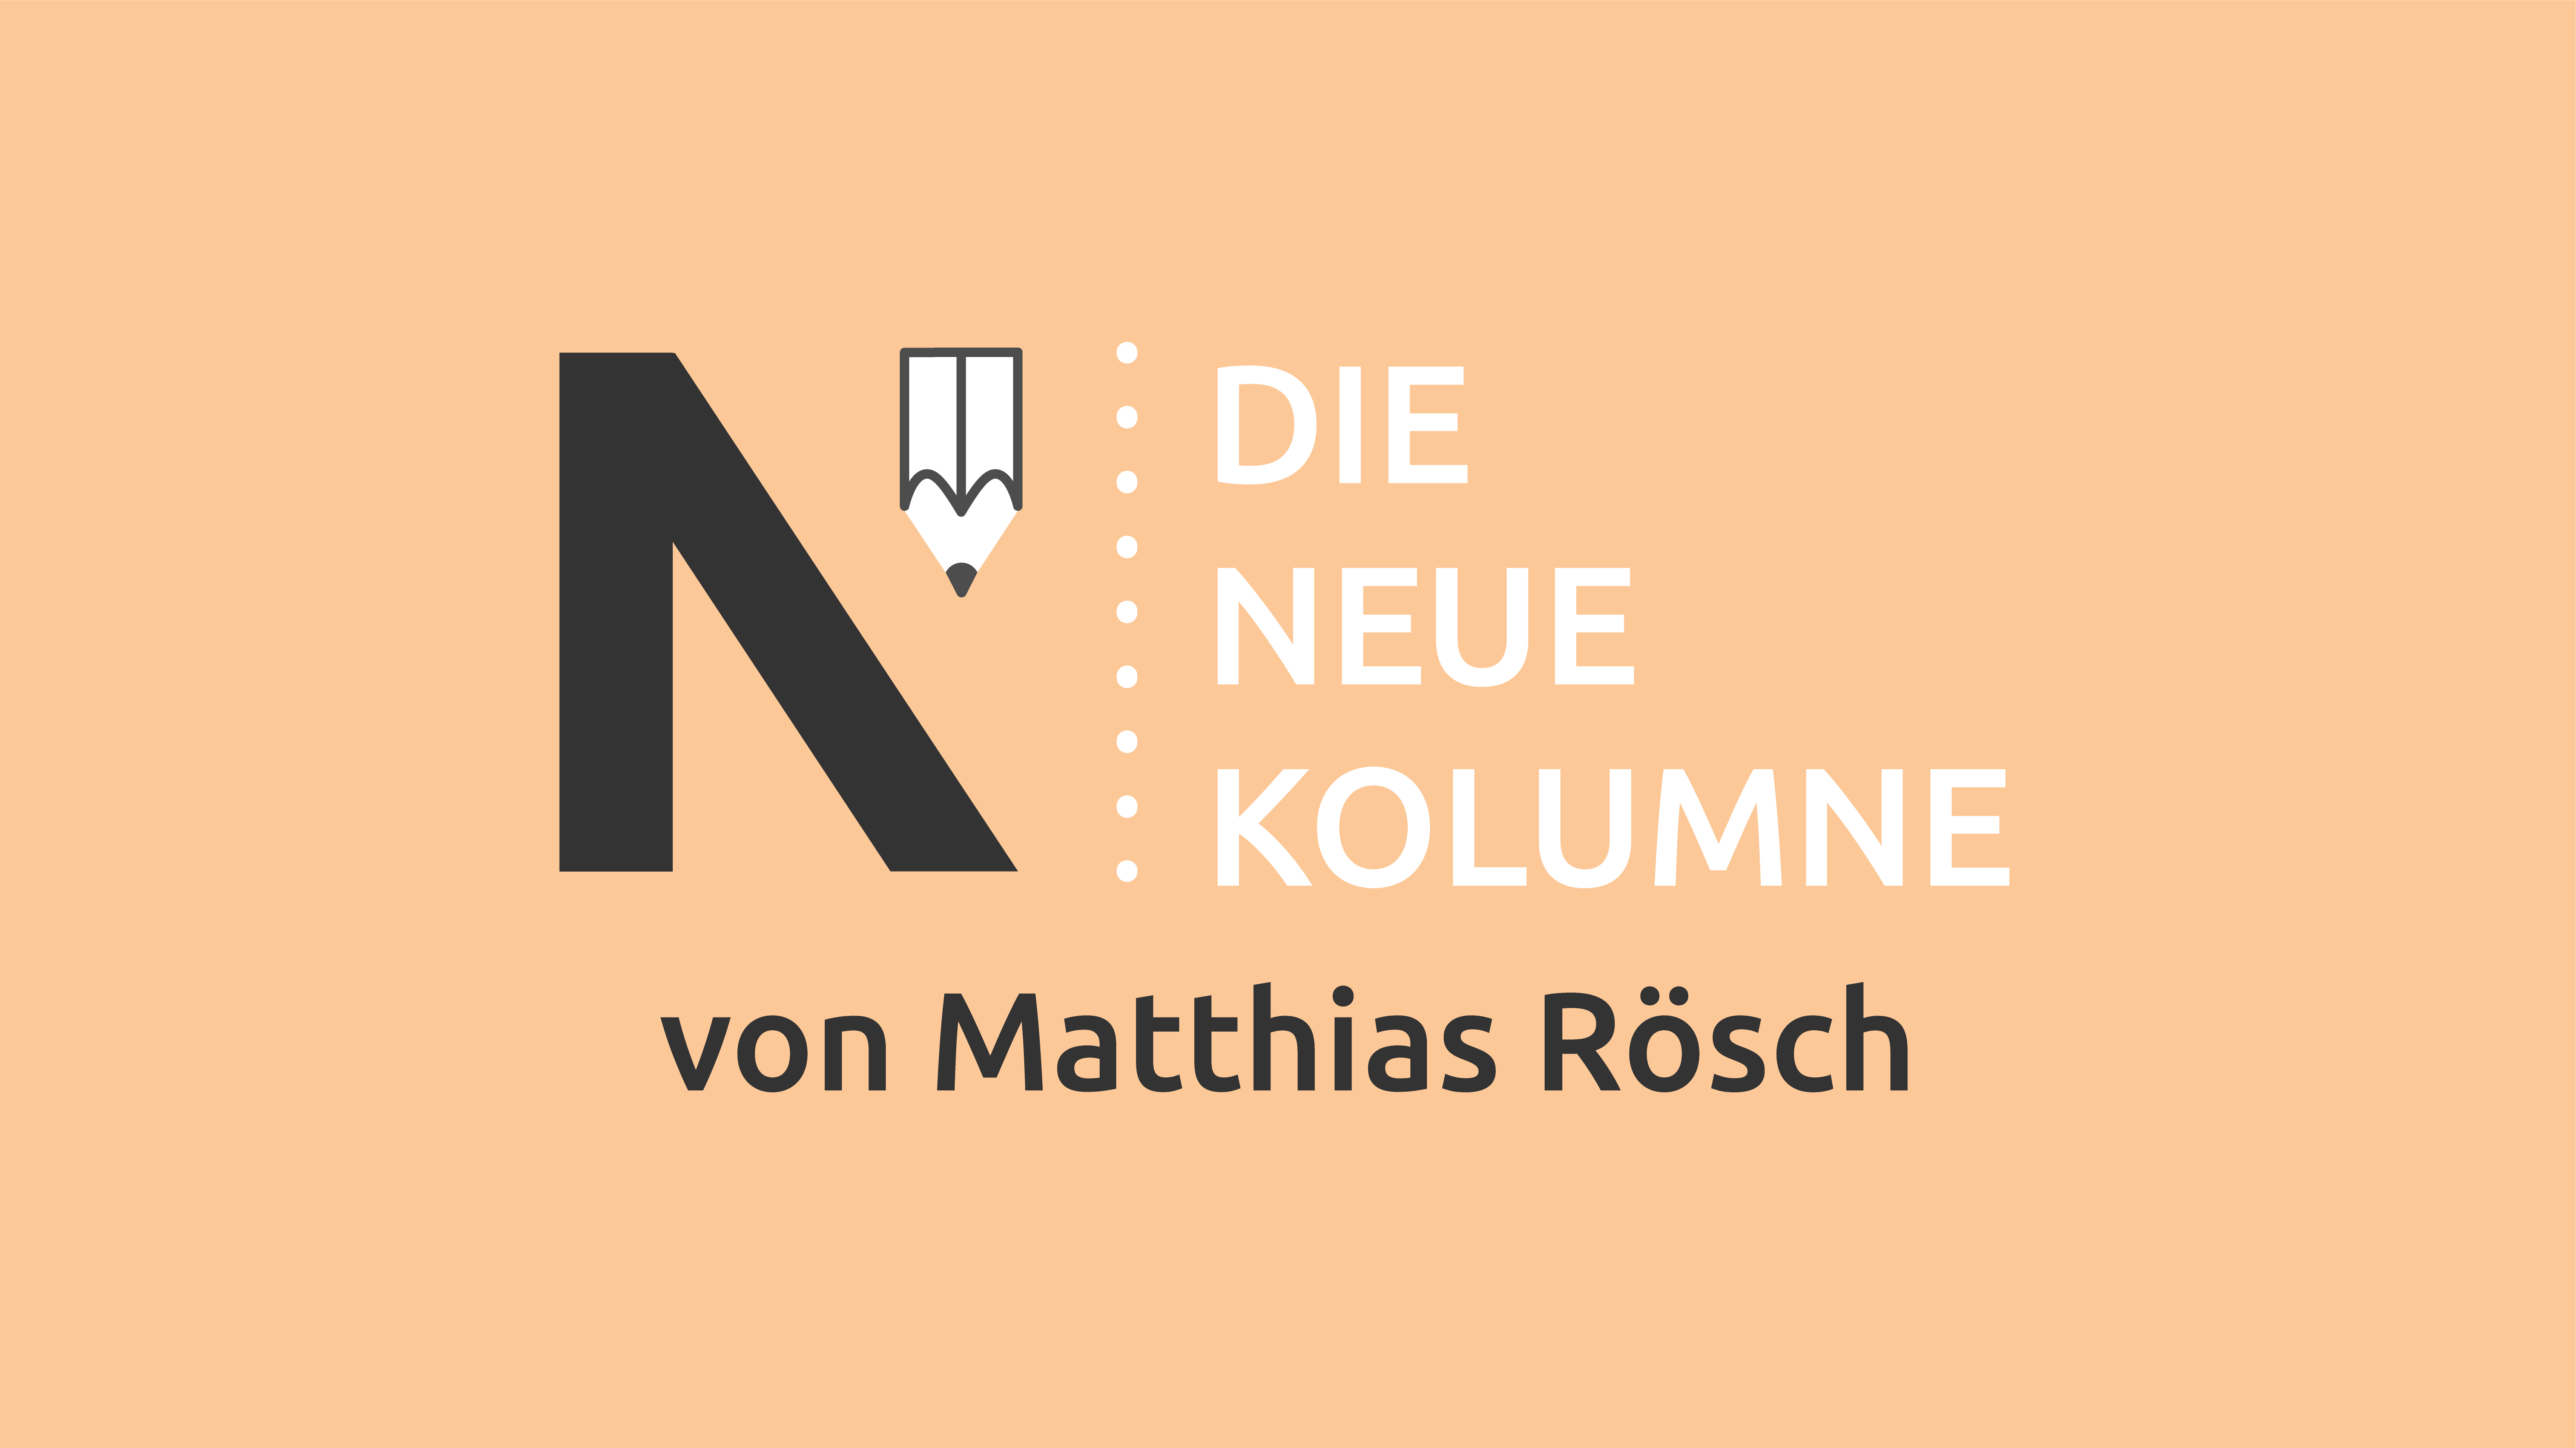 Das Logo von Die Neue Norm auf orangem Grund. Rechts davon steht: Die Neue Kolumne. Unten steht: Von Matthias Rösch.